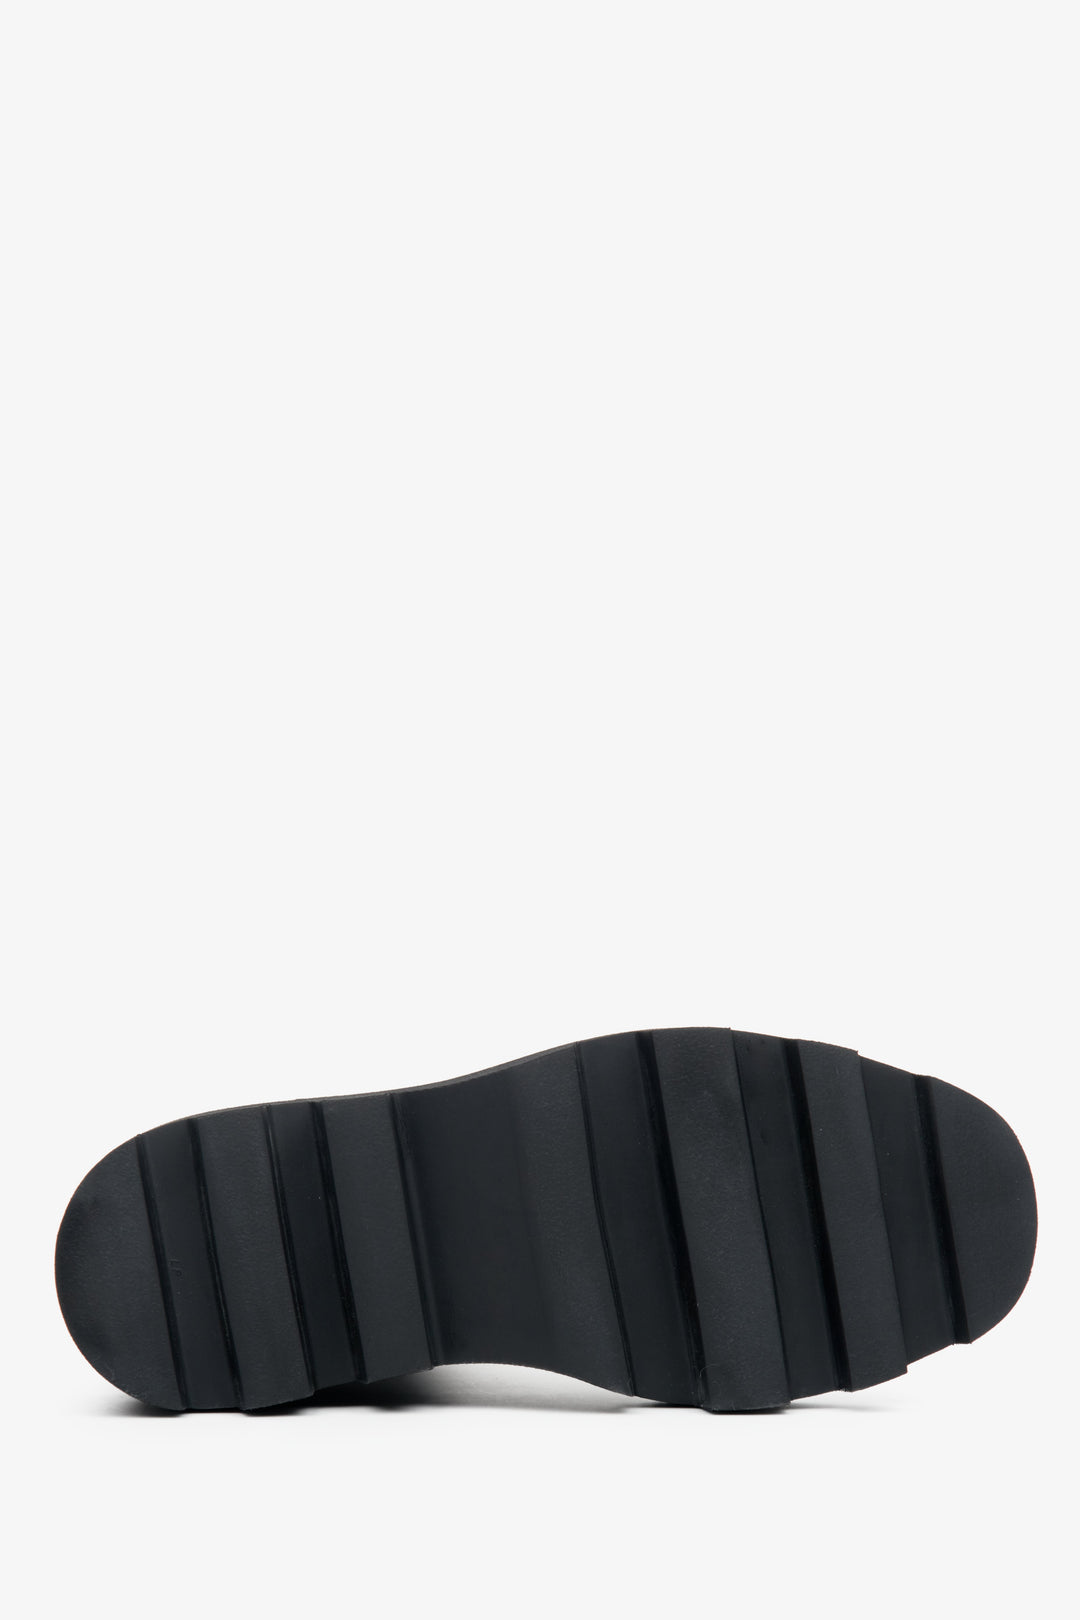 Damskie, wysokie sztyblety w kolorze czarnym ze skóry naturalnej Estro - zbliżenie na podeszwę buta.